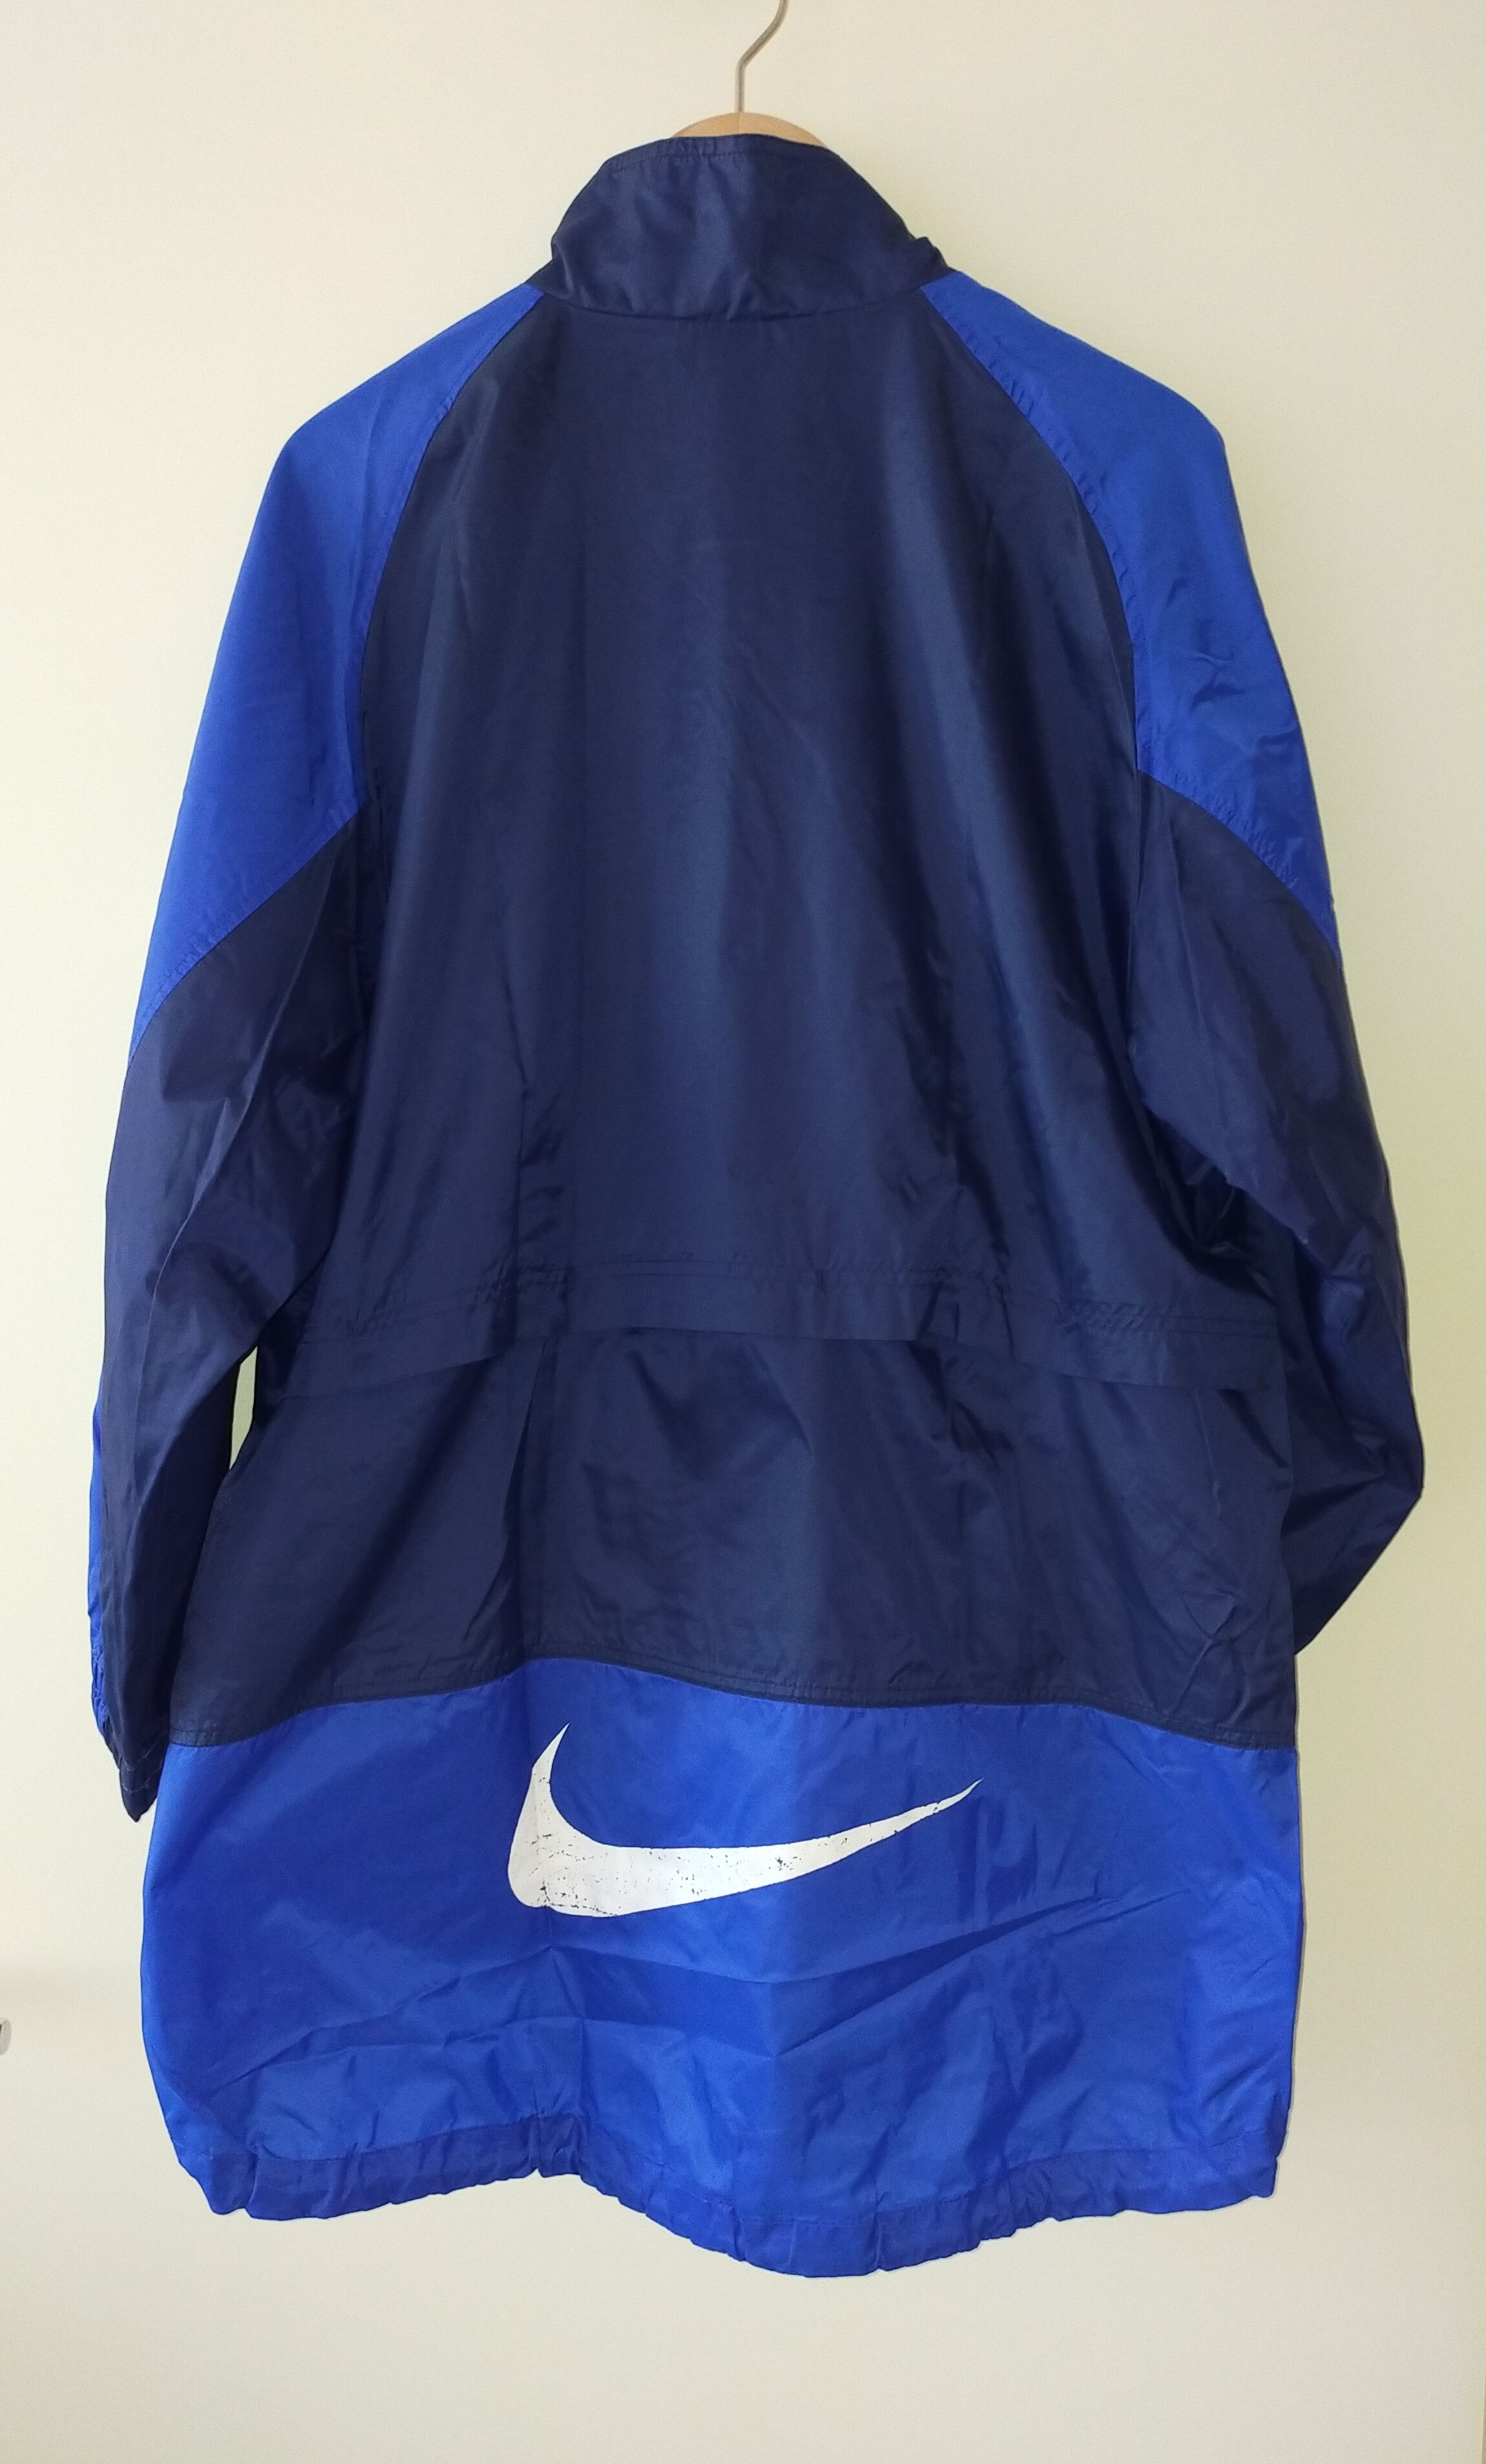 Nike Nike rain jacket Size US XL / EU 56 / 4 - 2 Preview